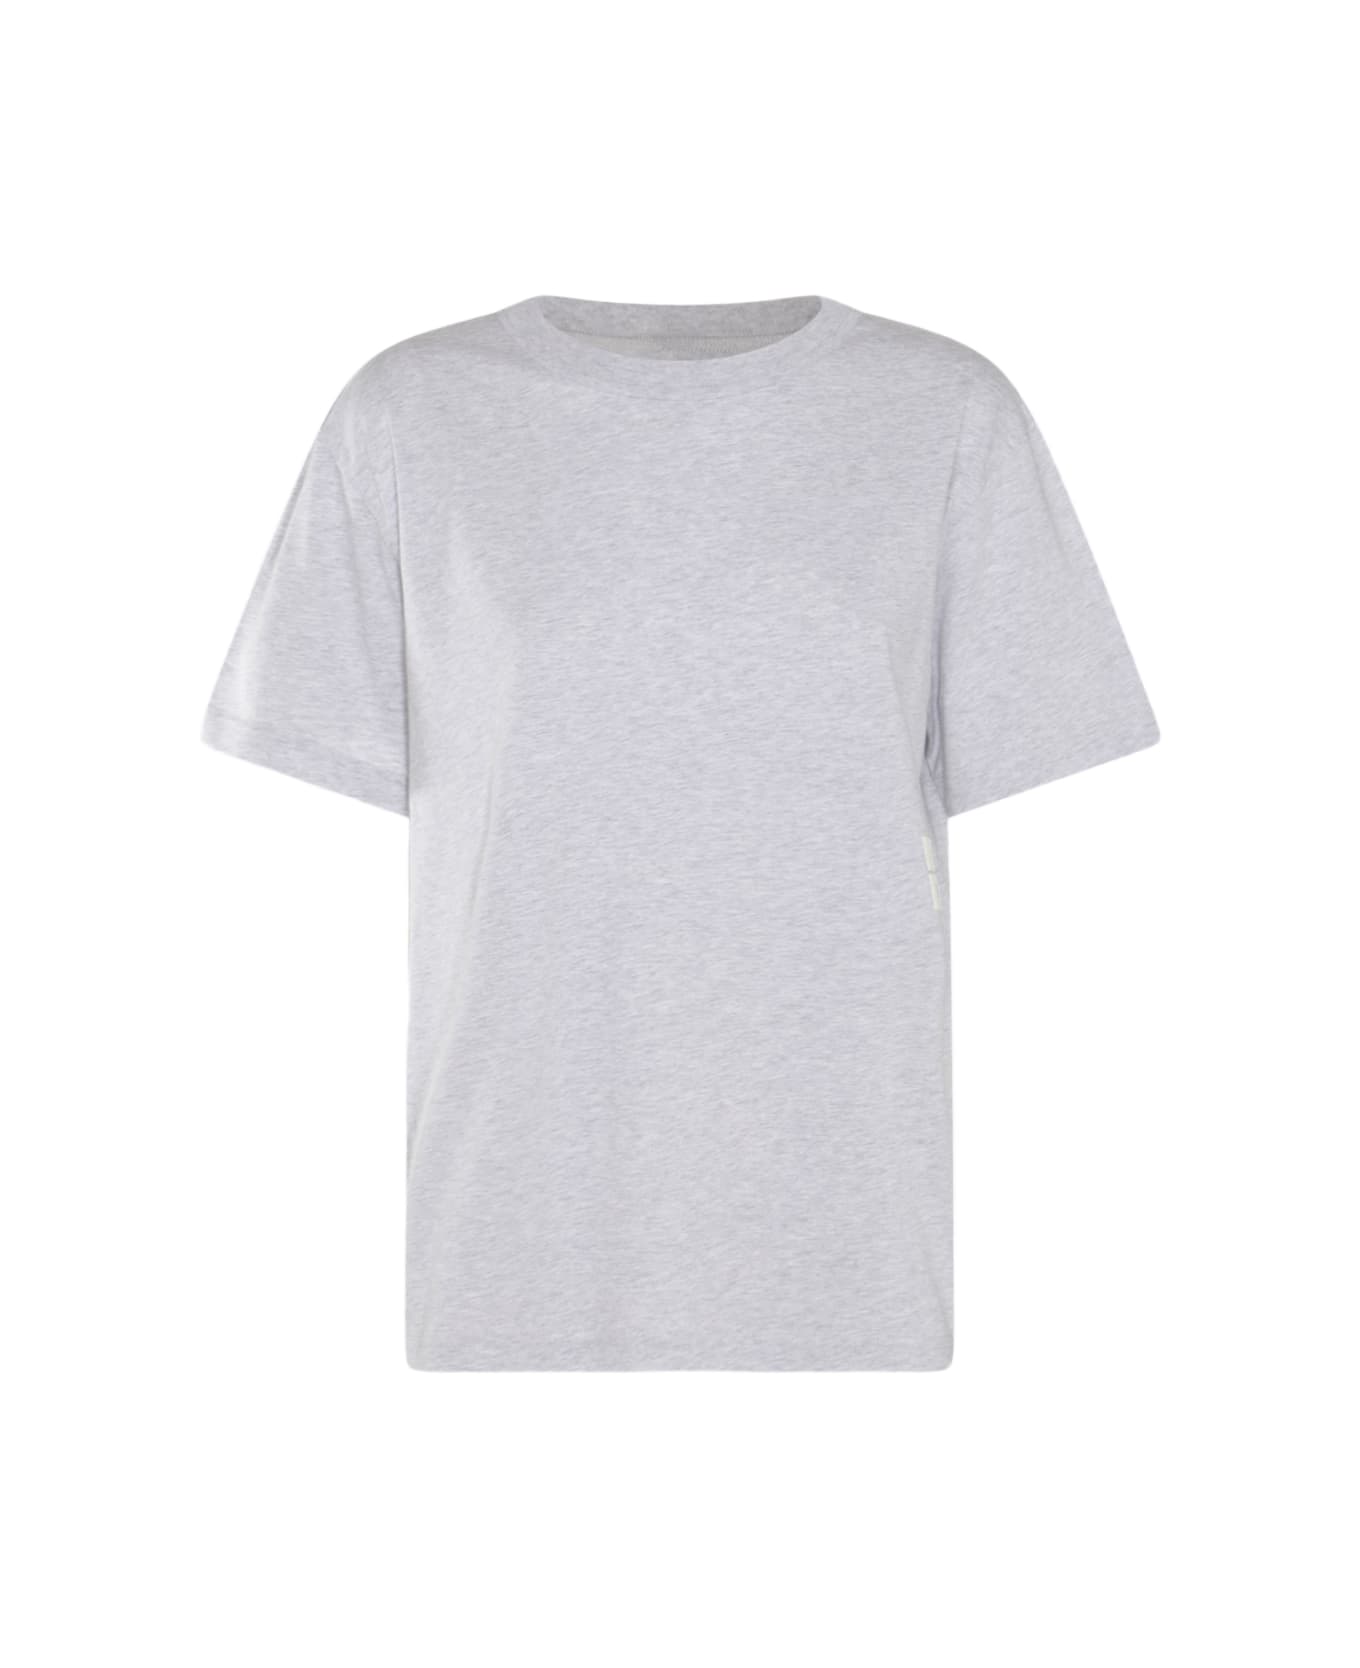 Alexander Wang Light Grey Cotton T-shirt - LIGHT HEATHER GREY Tシャツ